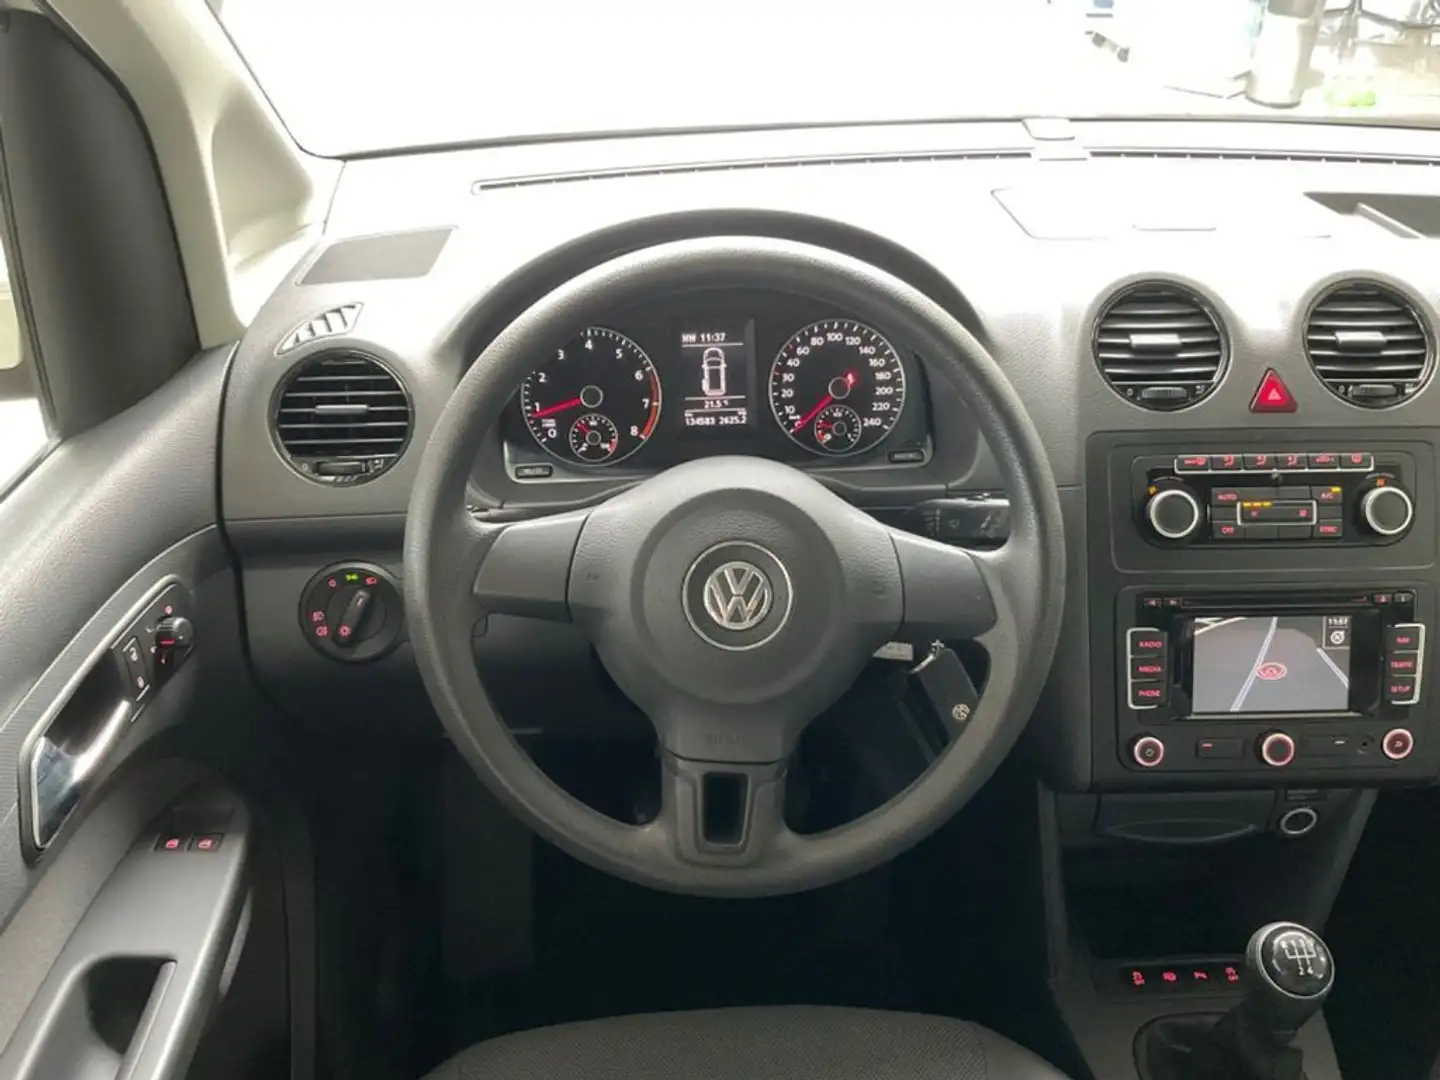 Volkswagen Caddy 1.2 TSI 105 CV 5p. Trendline Maxi Fehér - 2